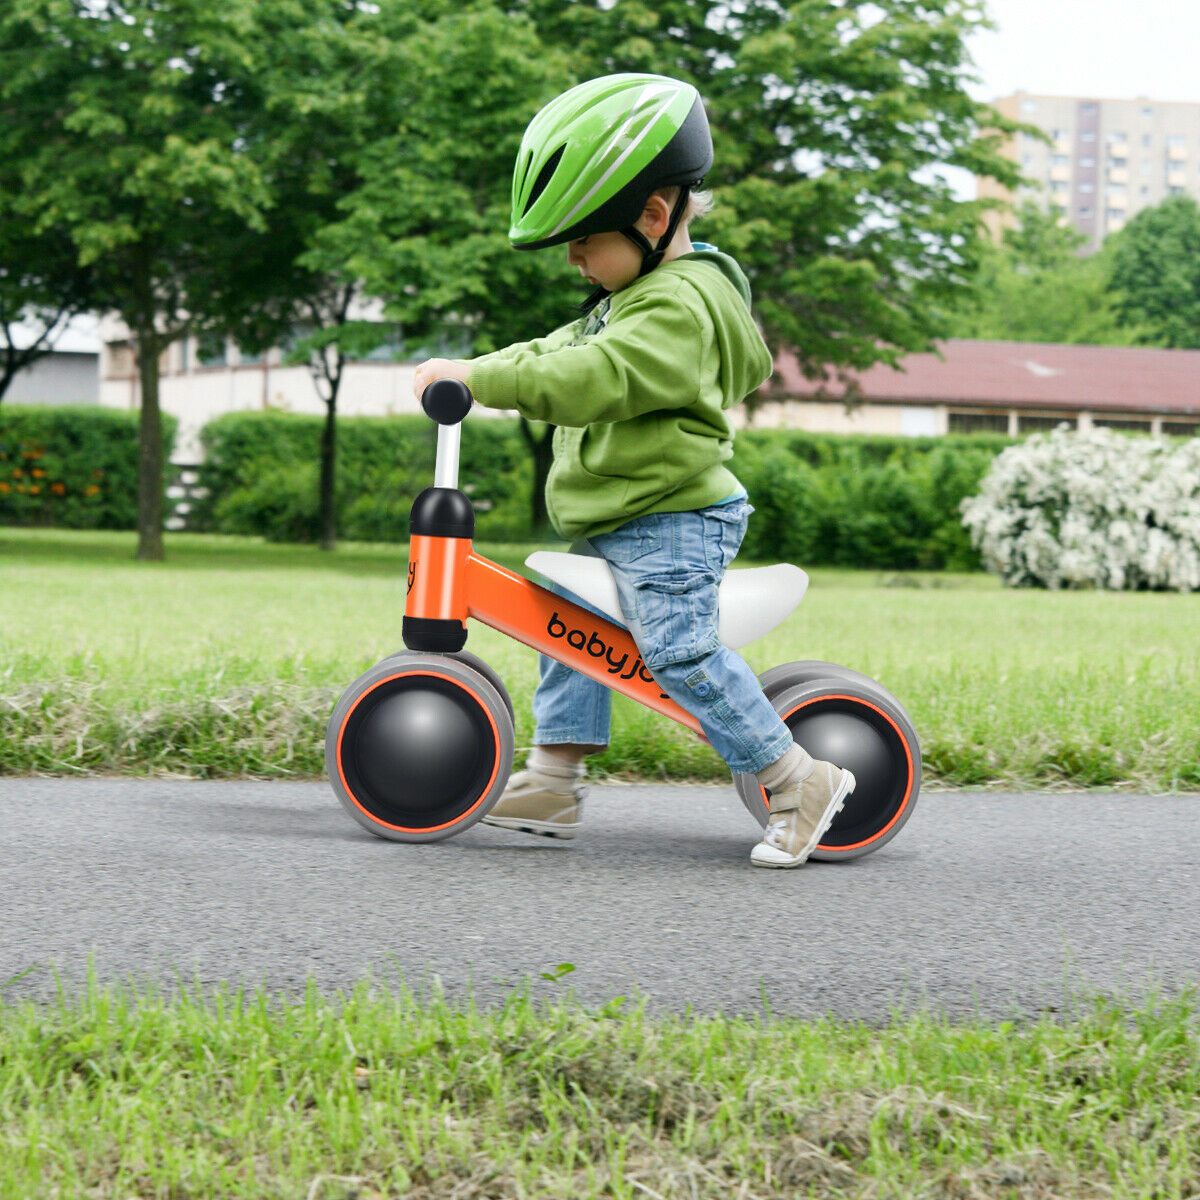 Babyjoy 4 Wheels Baby Balance Bike Children Walker No-Pedal Toddler Toys Rides Orange - image 4 of 10